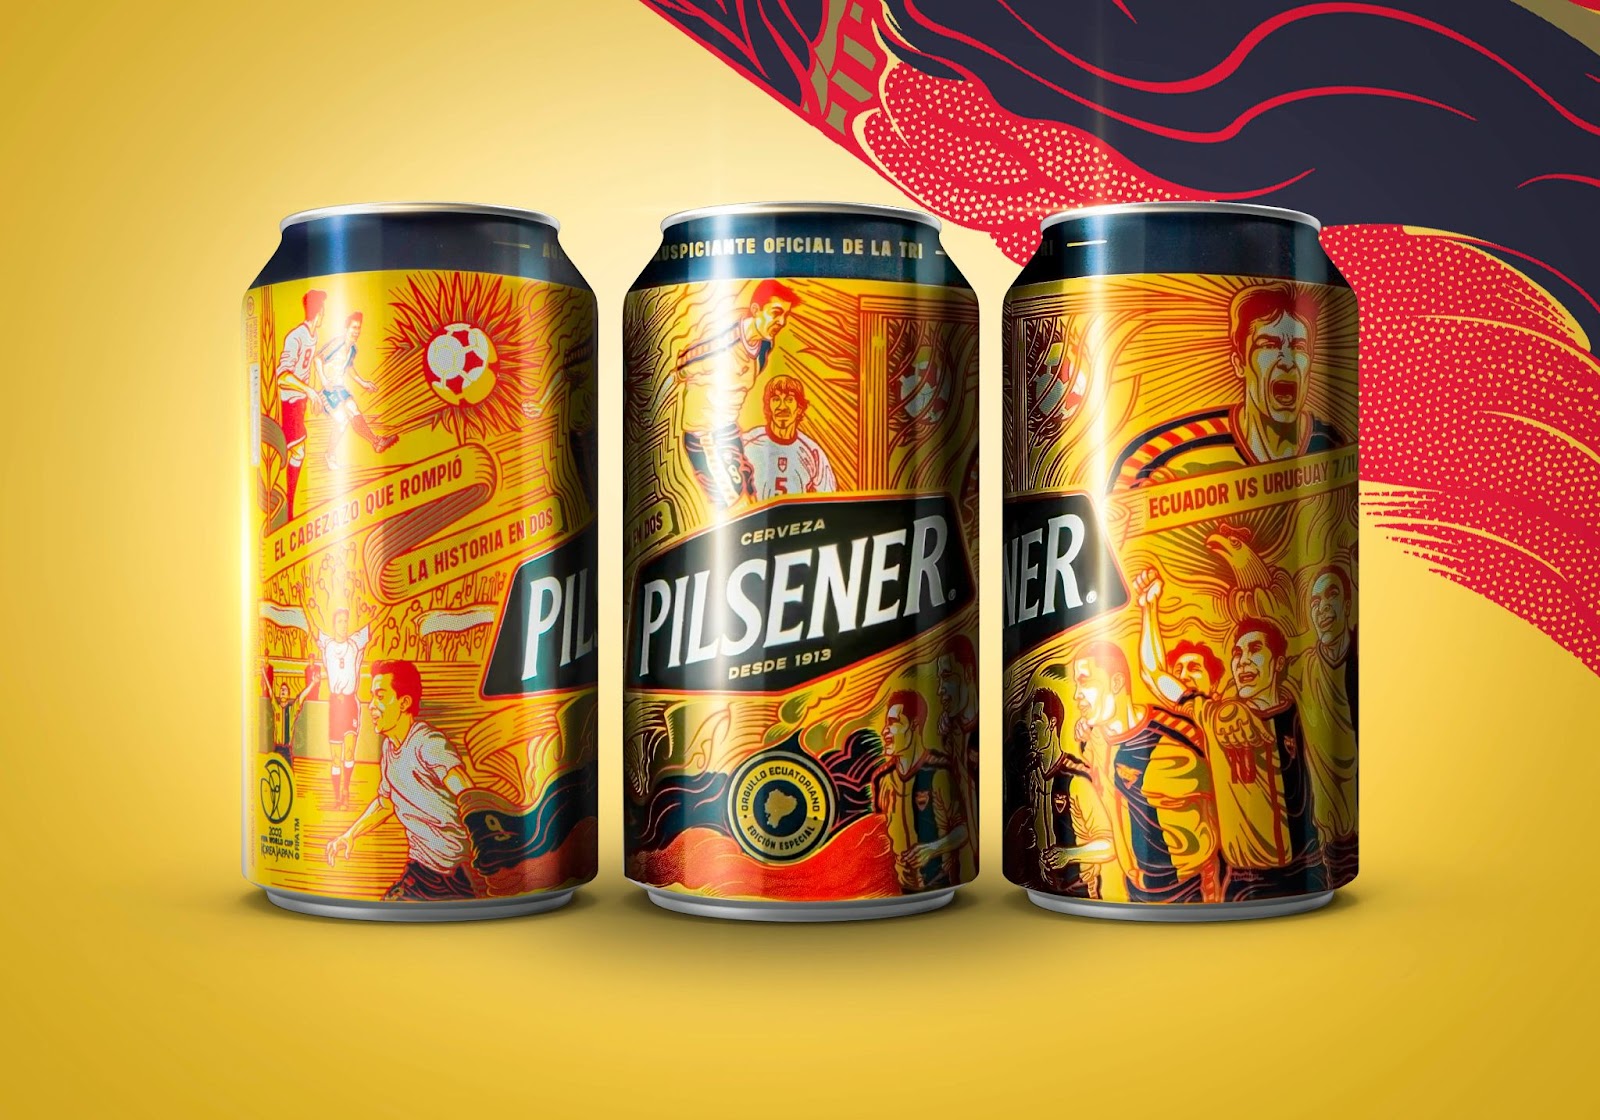 足球世界杯啤酒品牌包装设计作品,设计精美的啤酒包装设计。